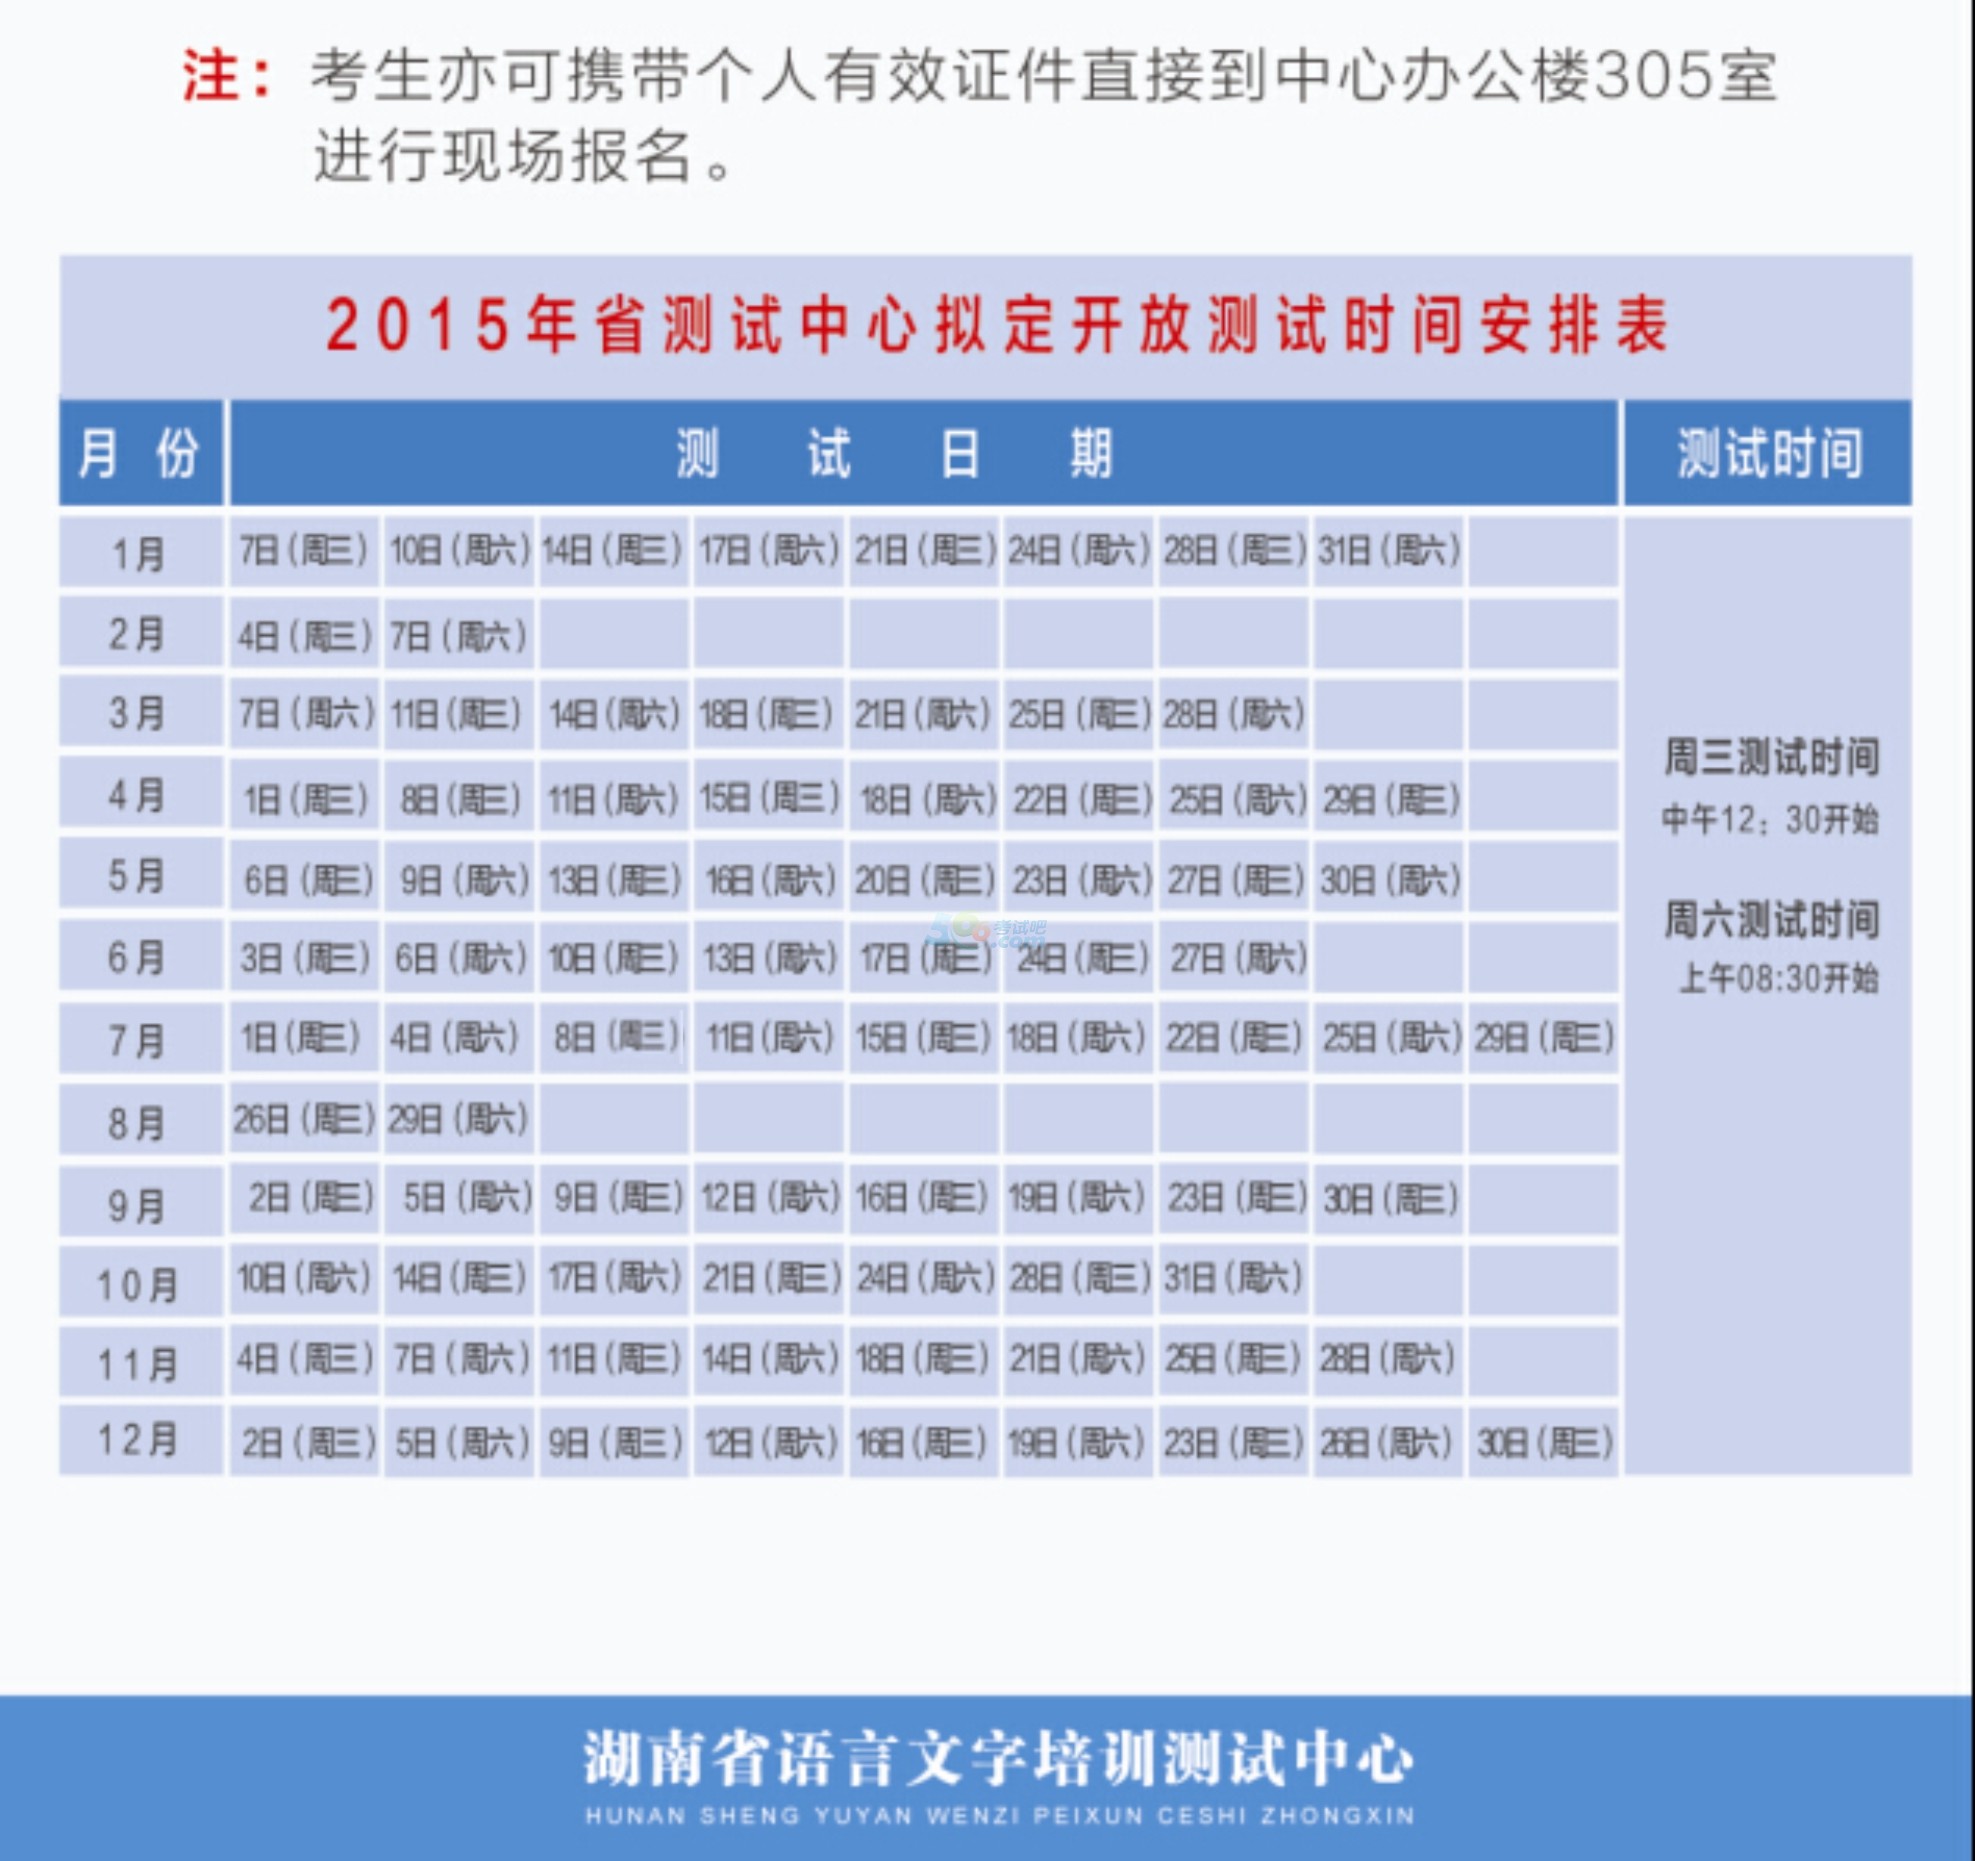 2015年全年湖南普通话考试报名时间安排-普通